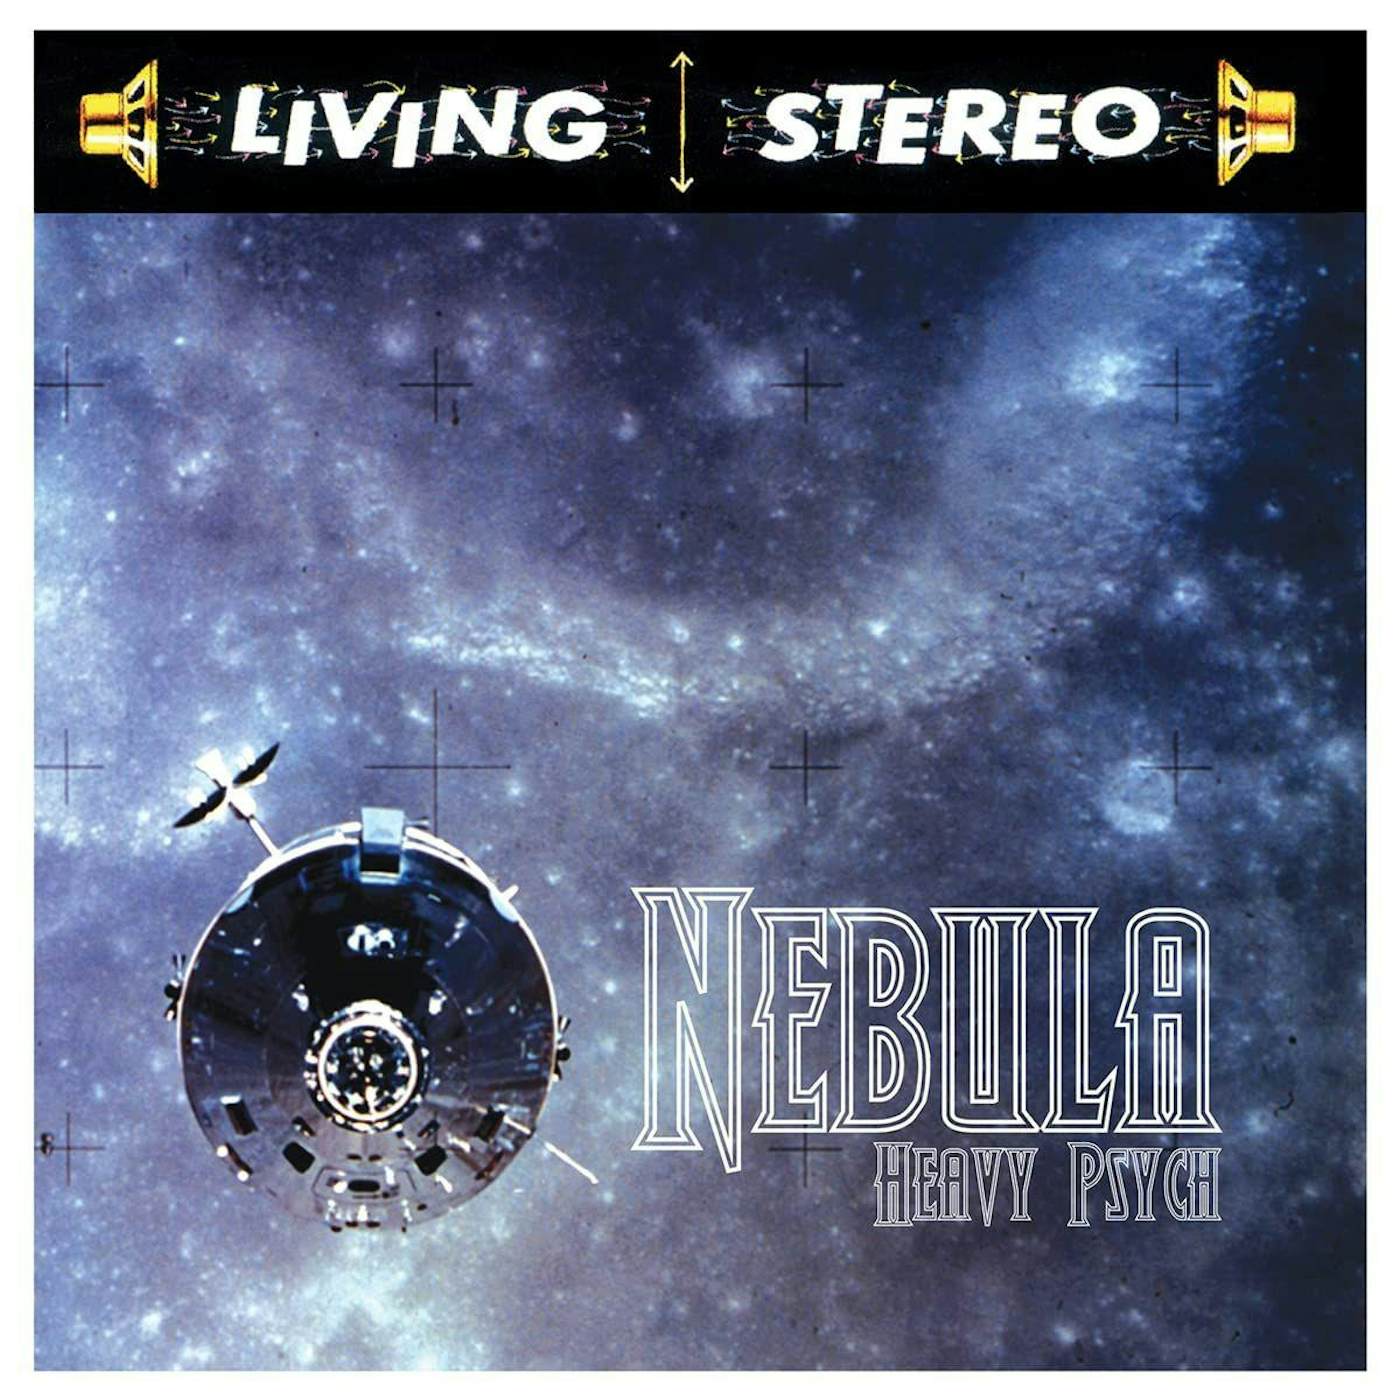 Nebula Heavy Psych (Blue/White/Black) Vinyl Record